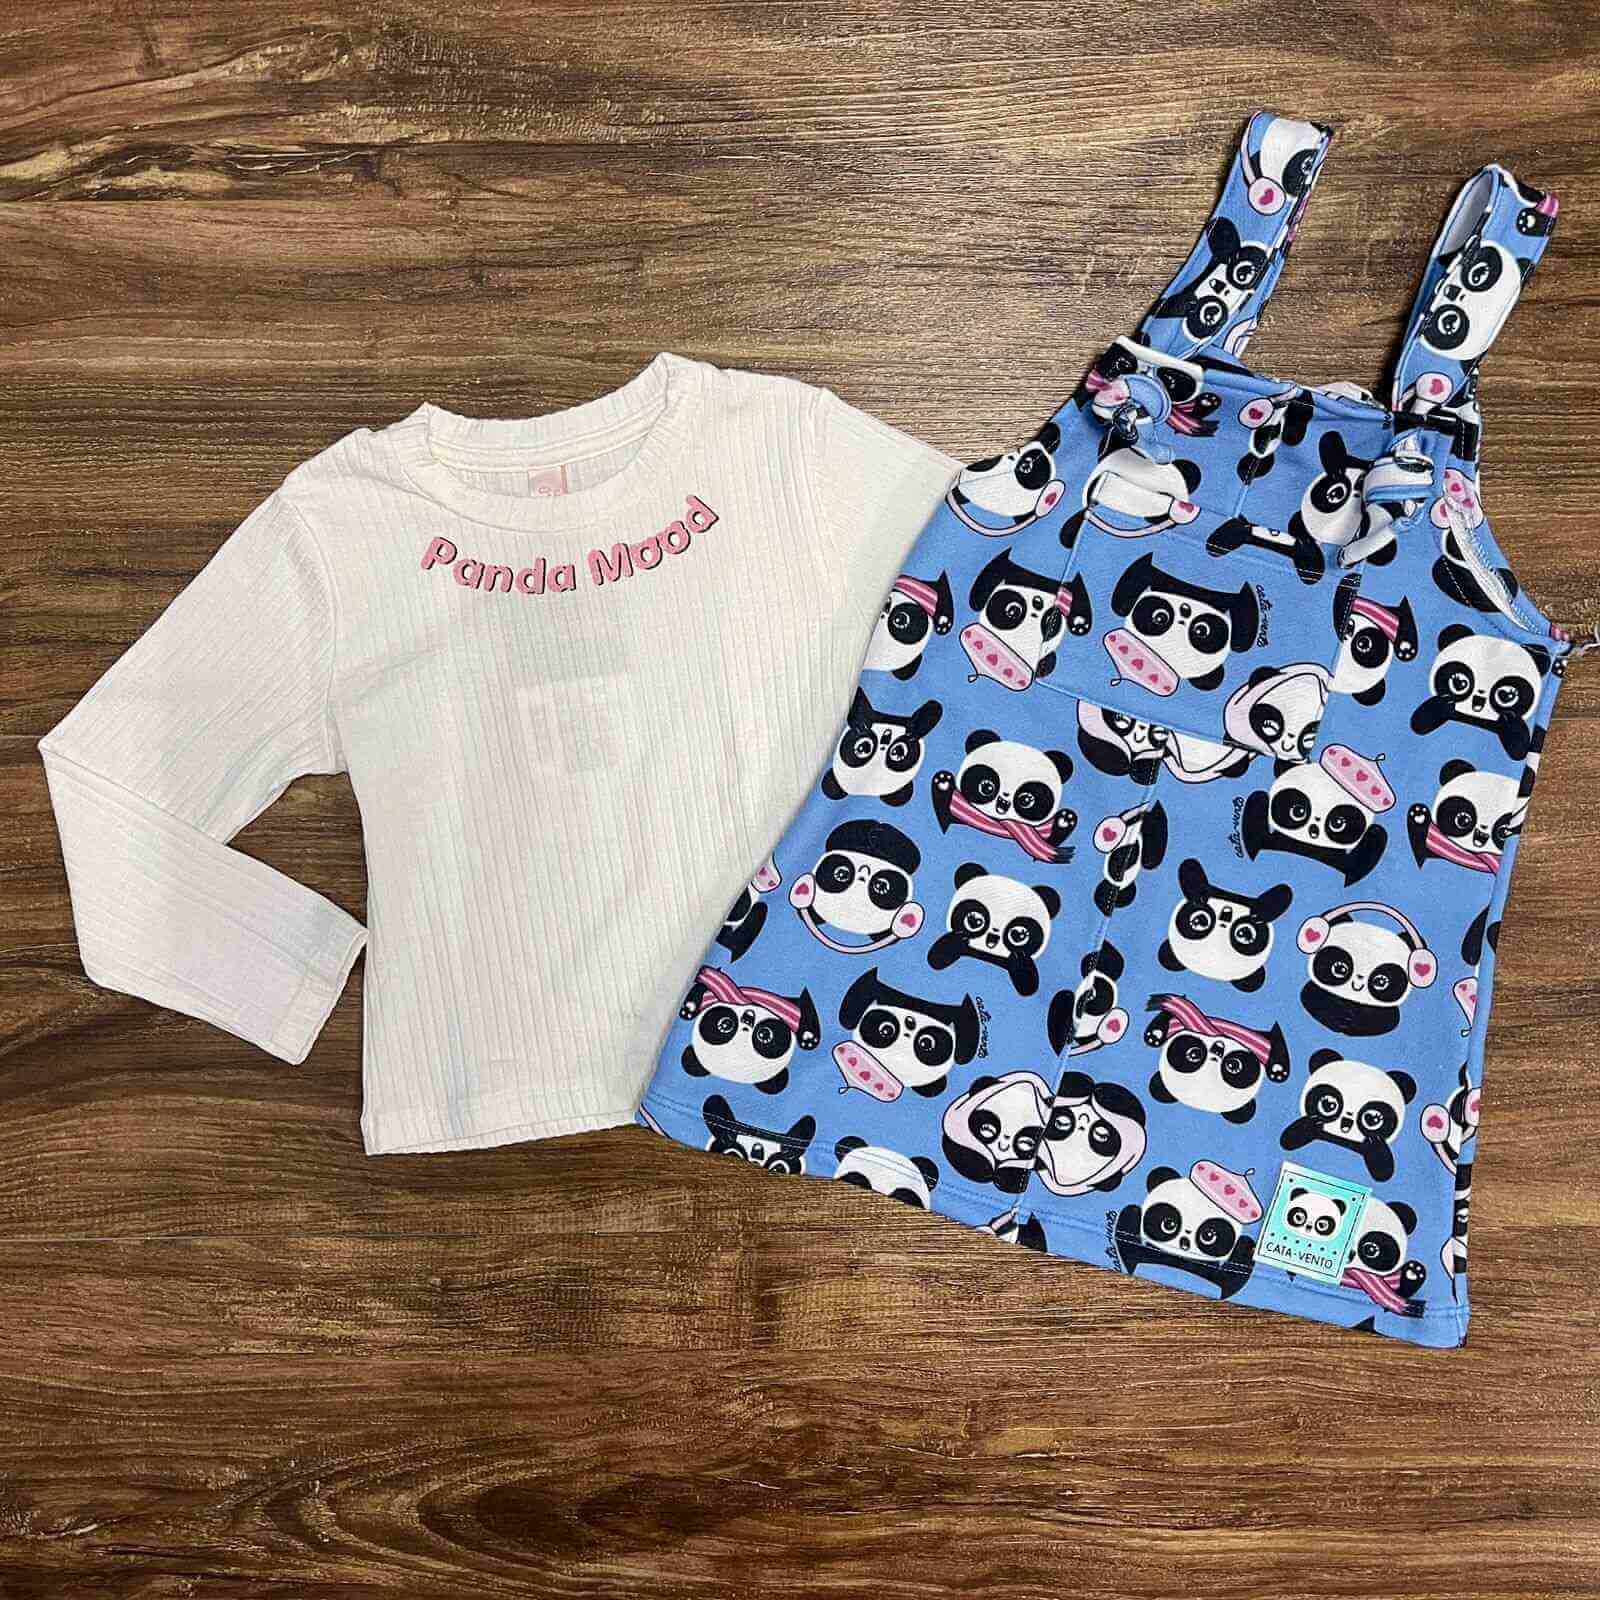 Vestido Azul com Blusinha Panda Mood Infantil